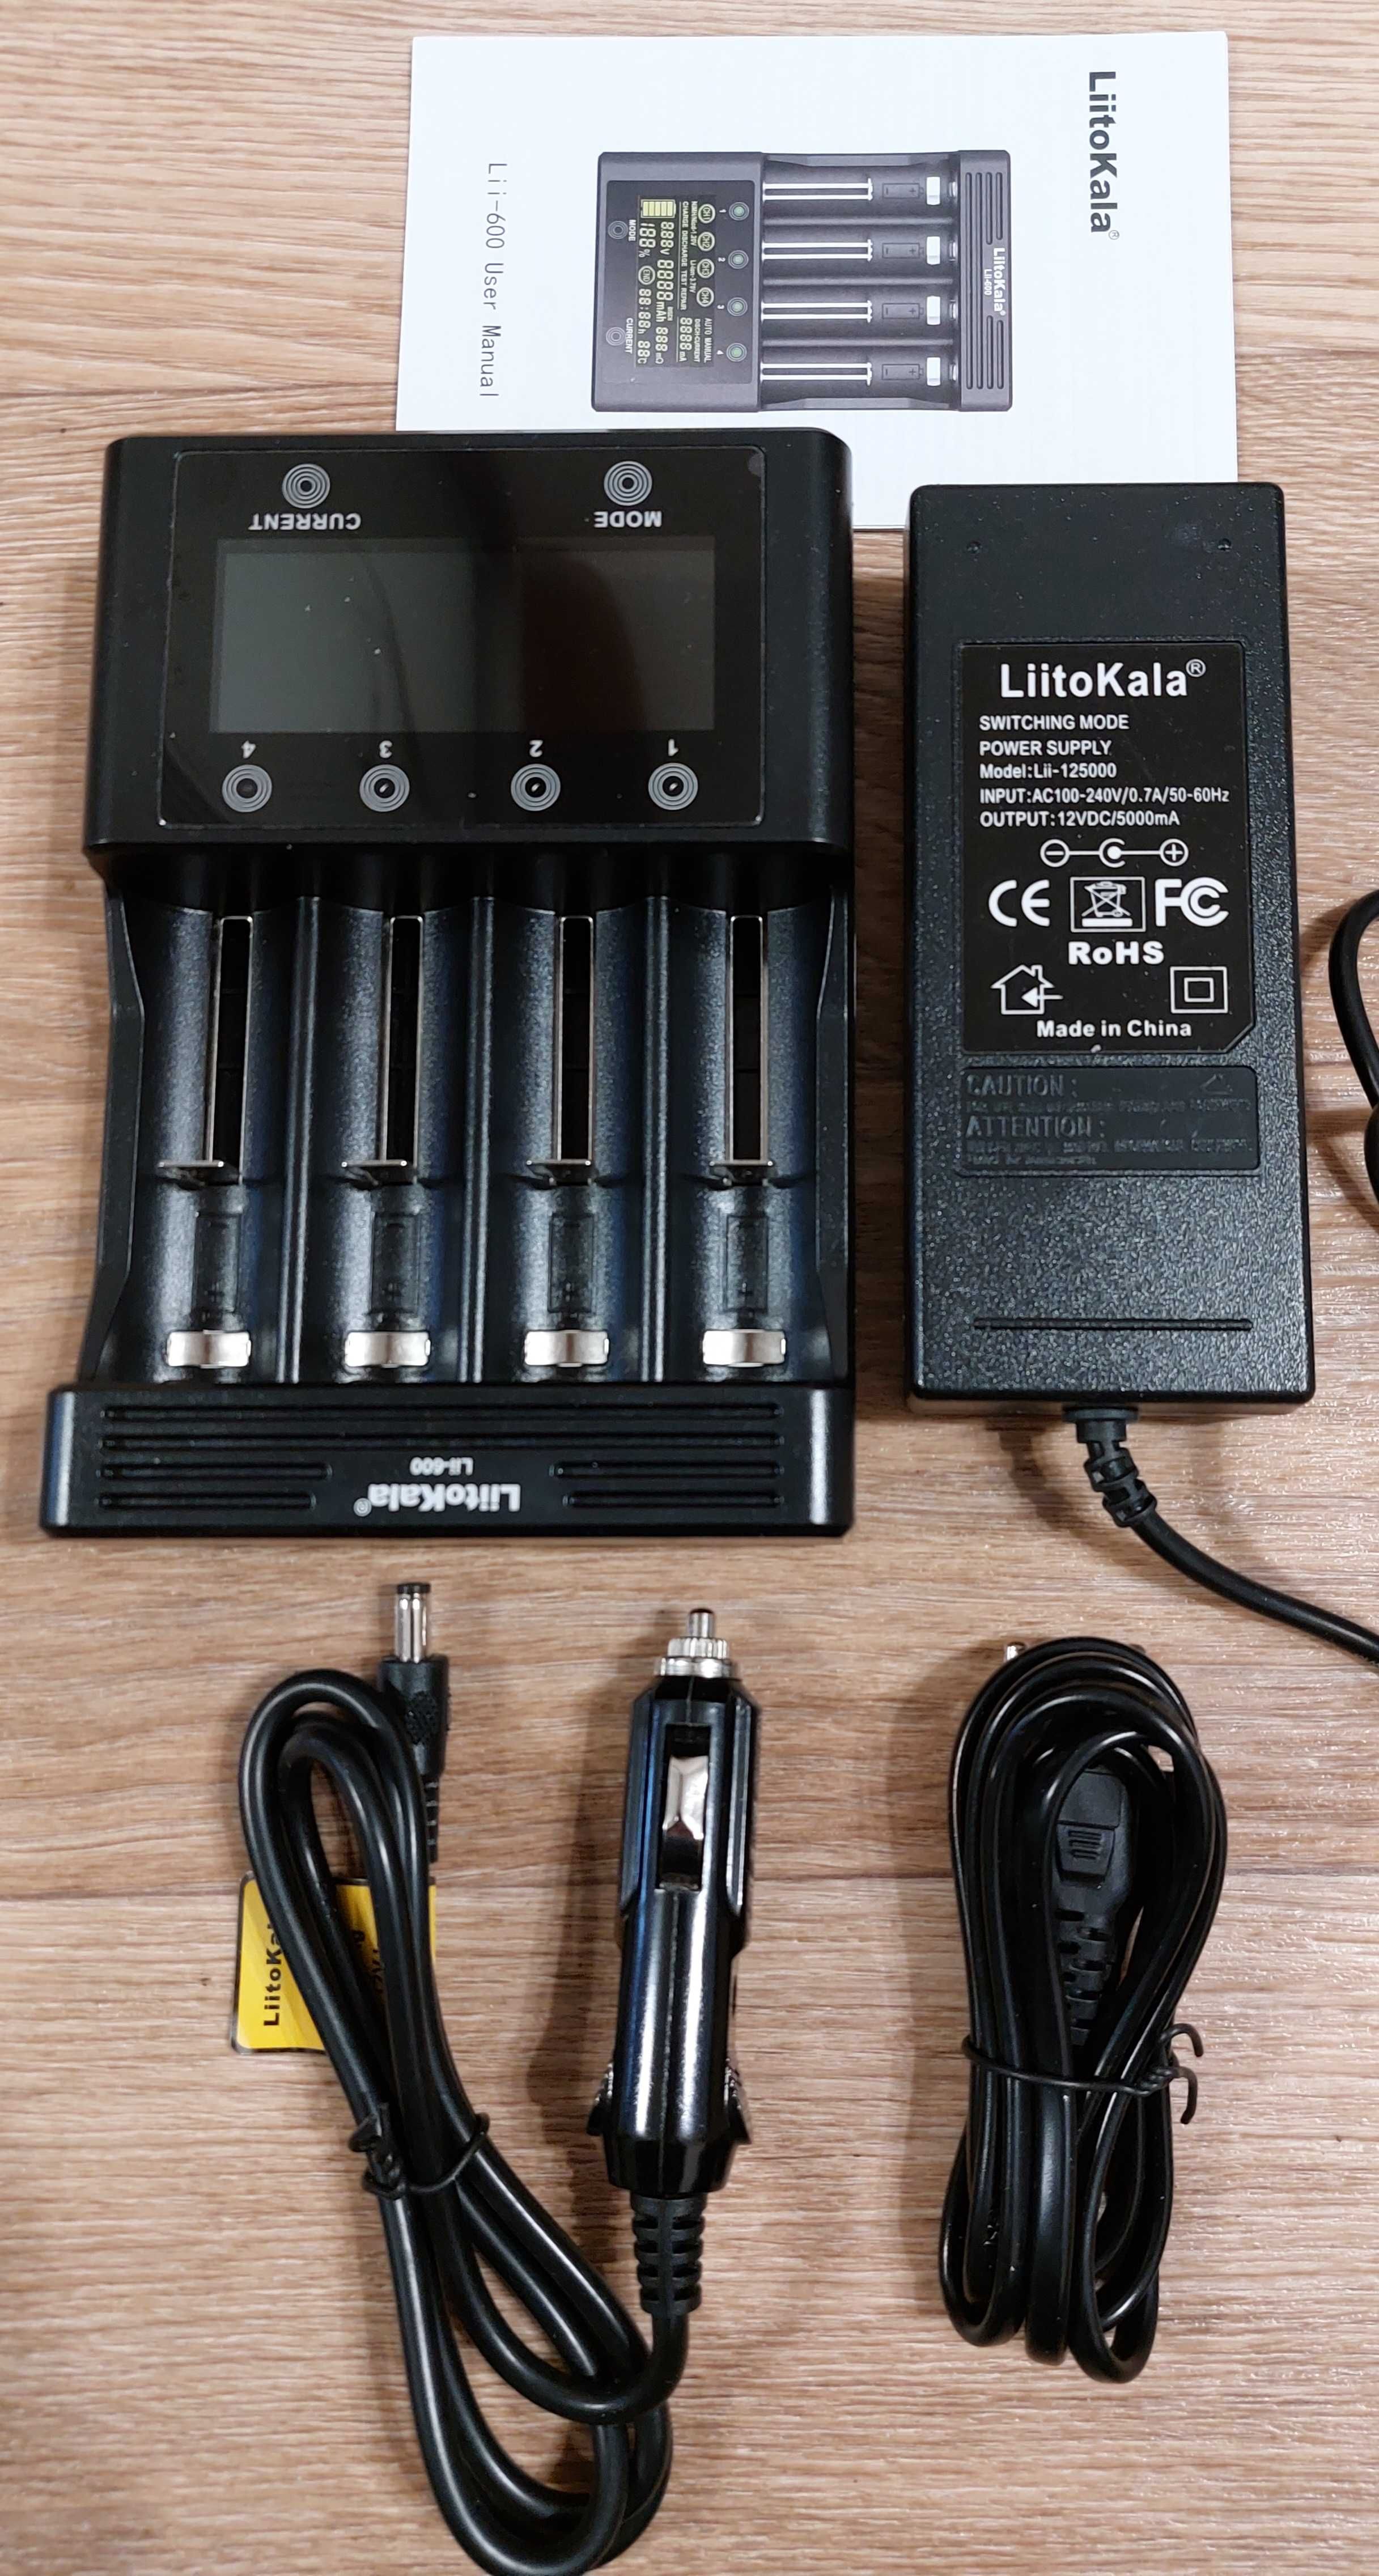 (НОВЫЙ) LiitoKala Lii-600 Зарядное устройство